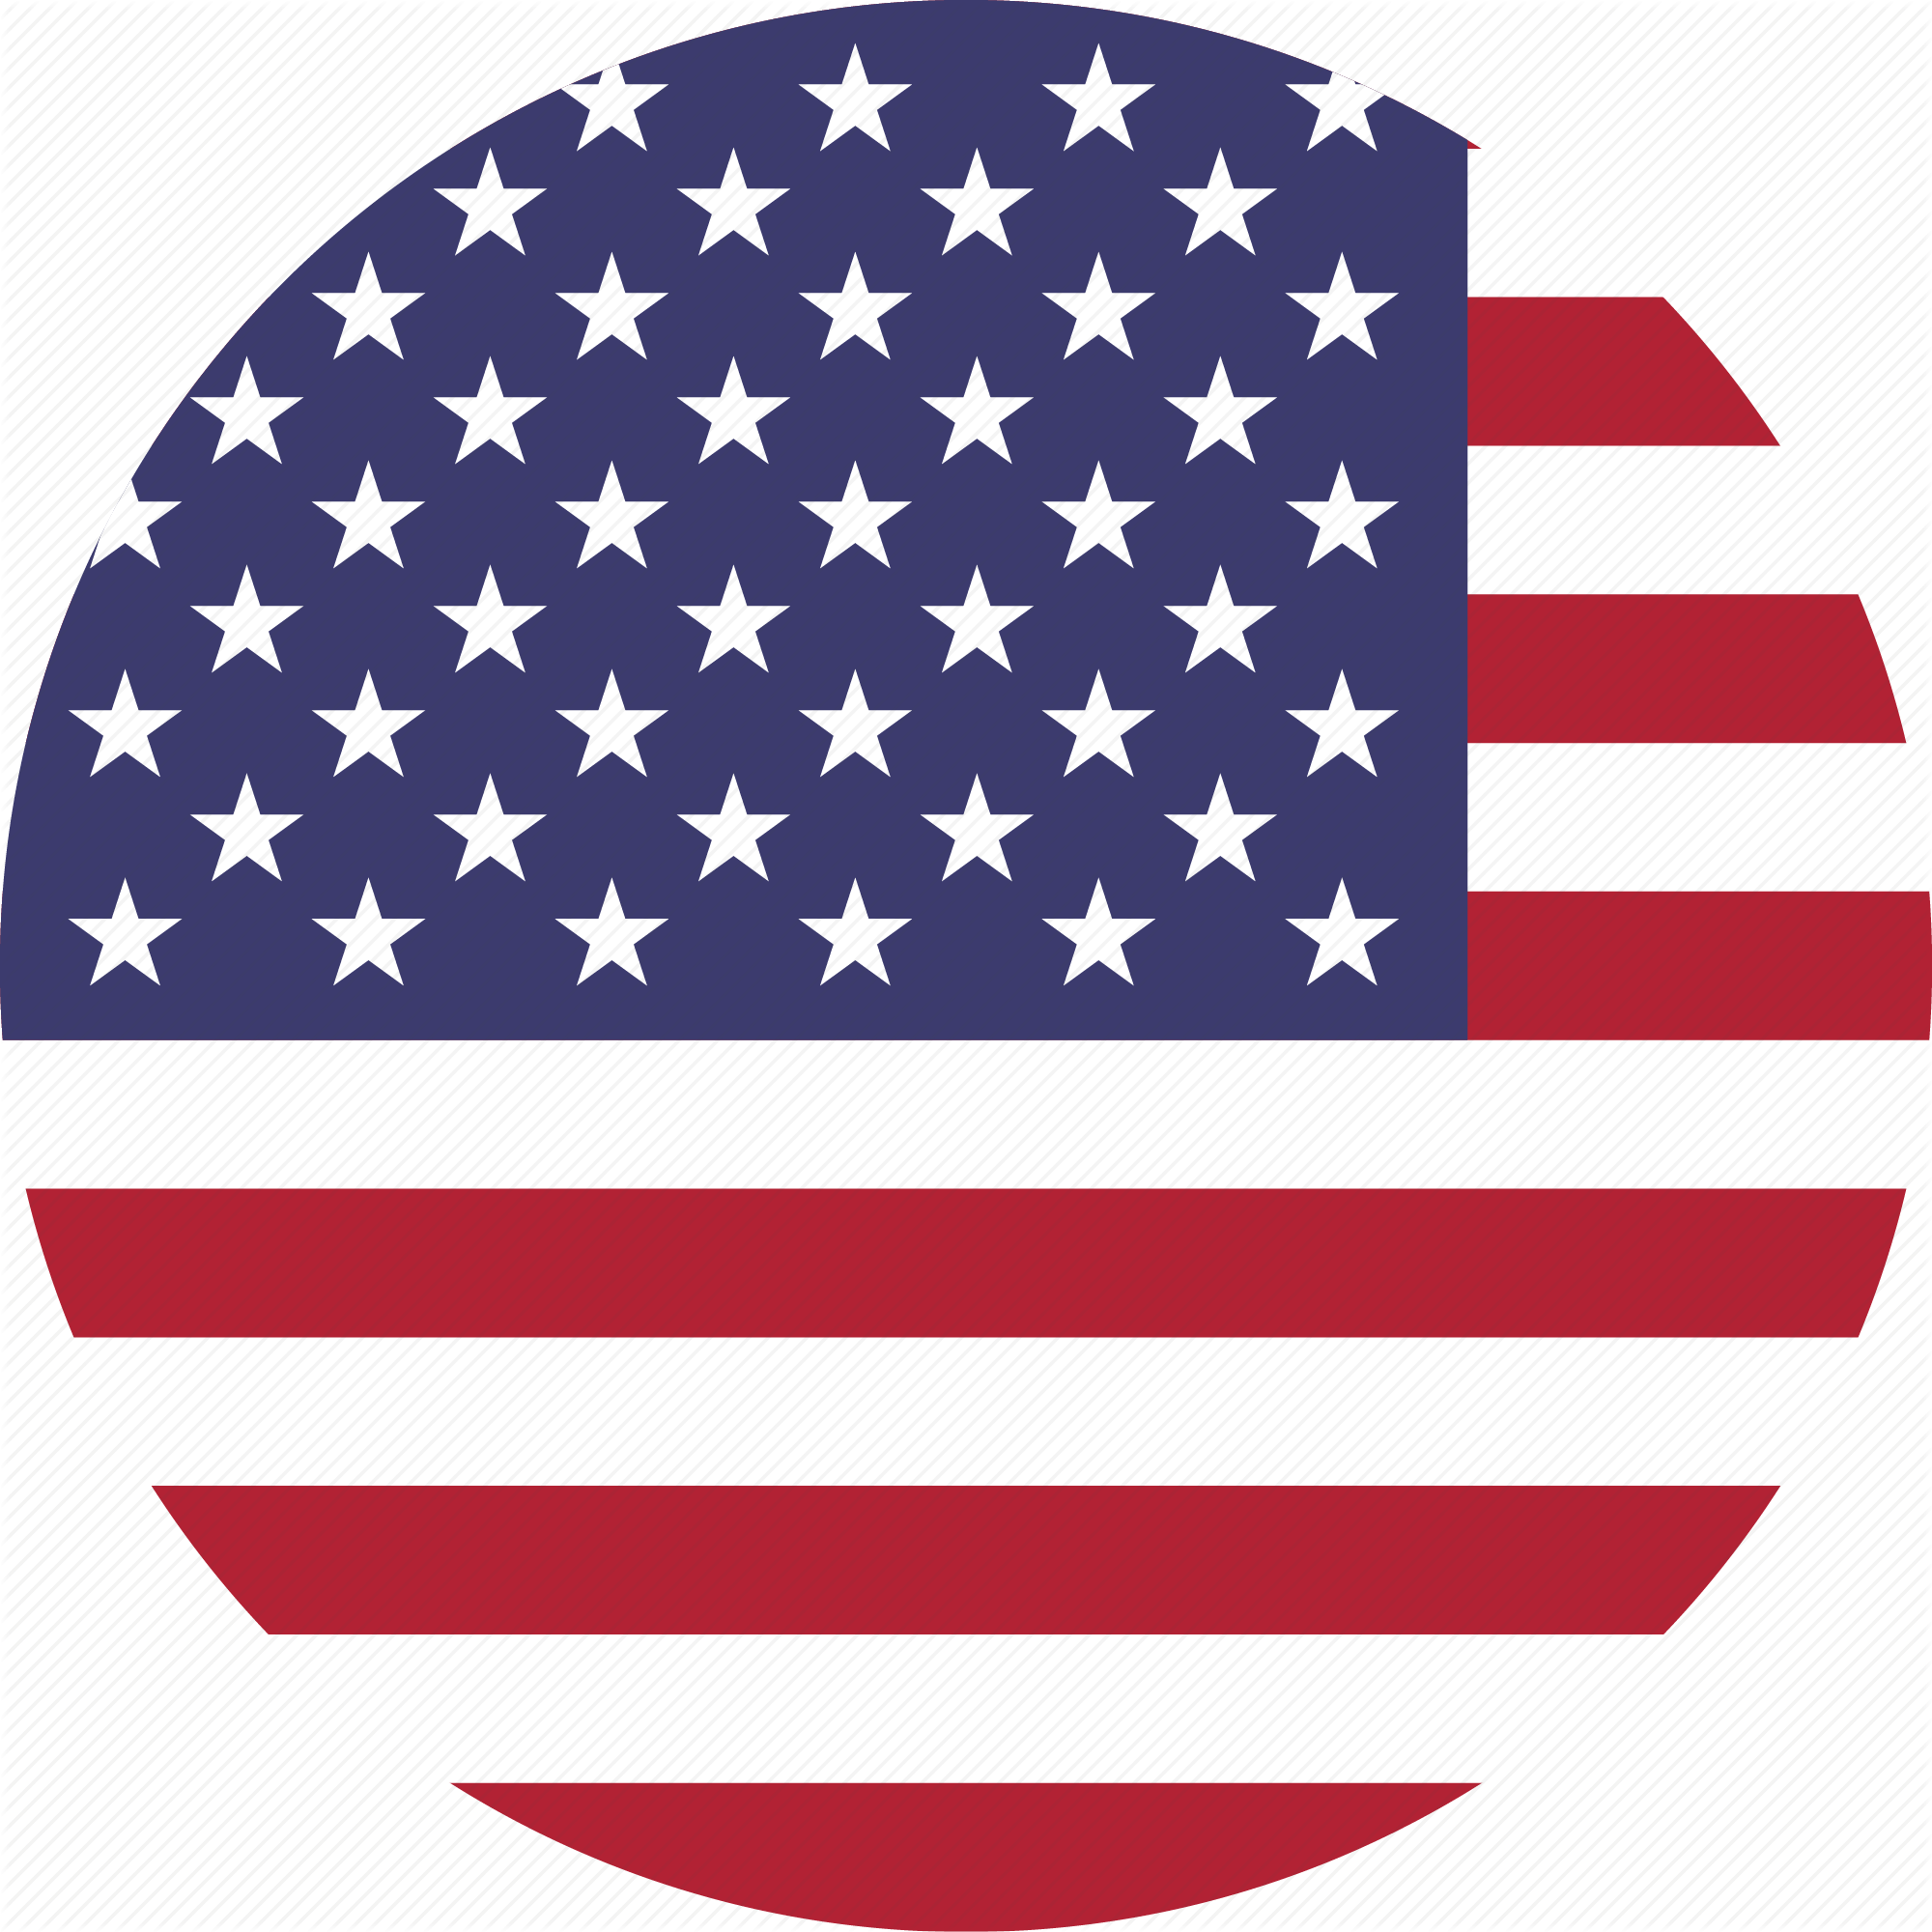 Правящие круги сша. Флаг США 1940. Иконка флаг USA. Соединенные штаты Америки флаг. Флаг ЮСА.